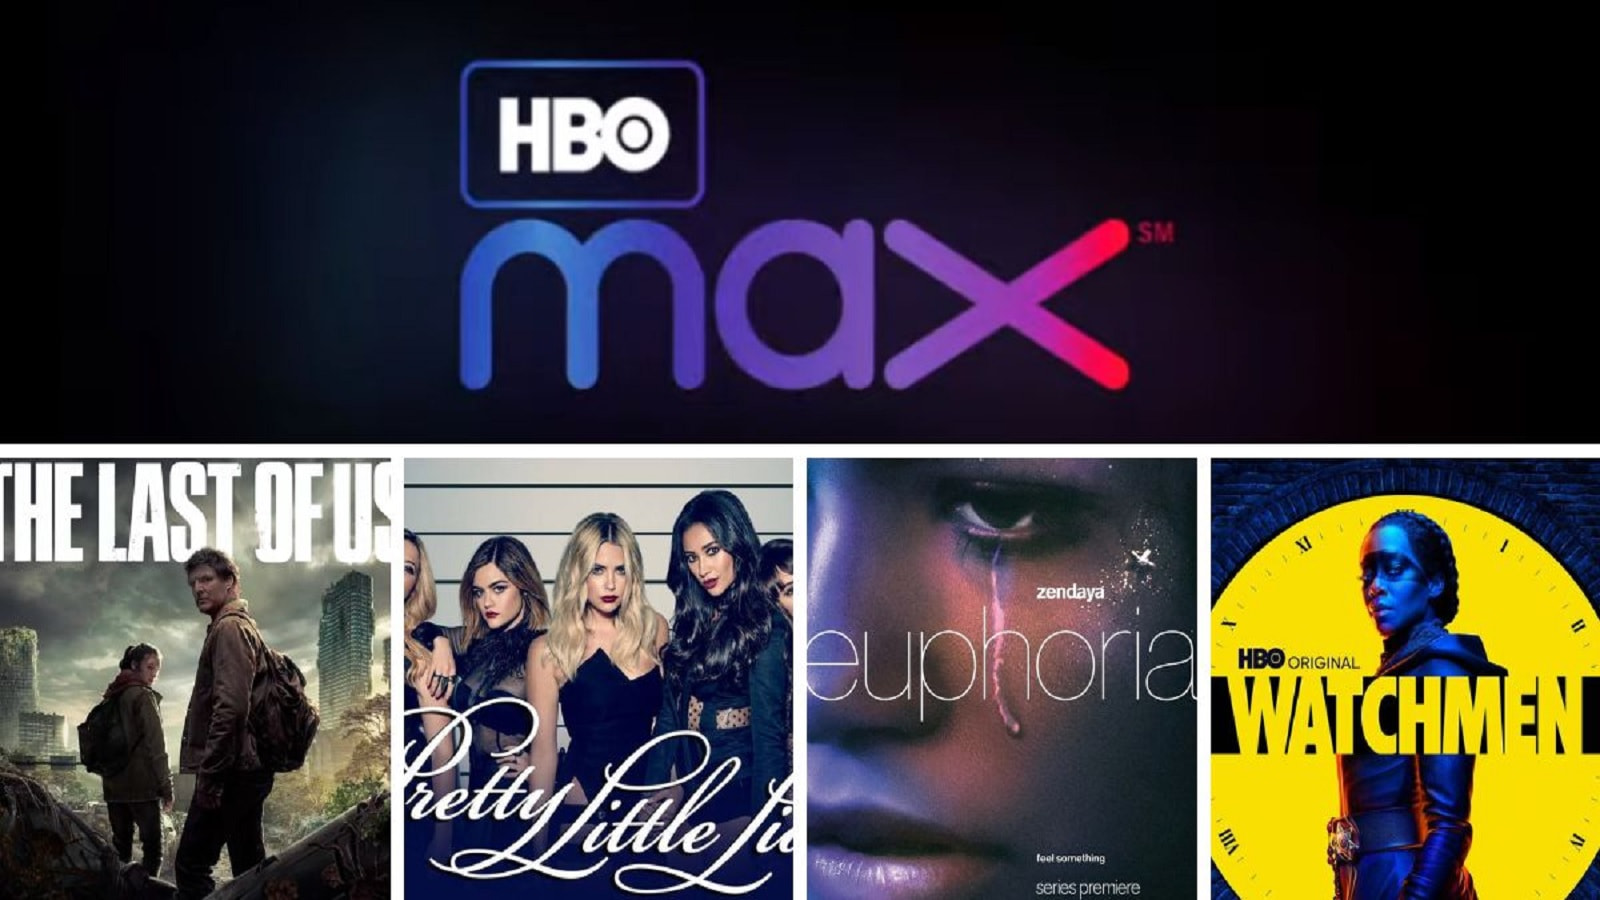 HBO Max - Vê as melhores séries por apenas 4,99€ por mês